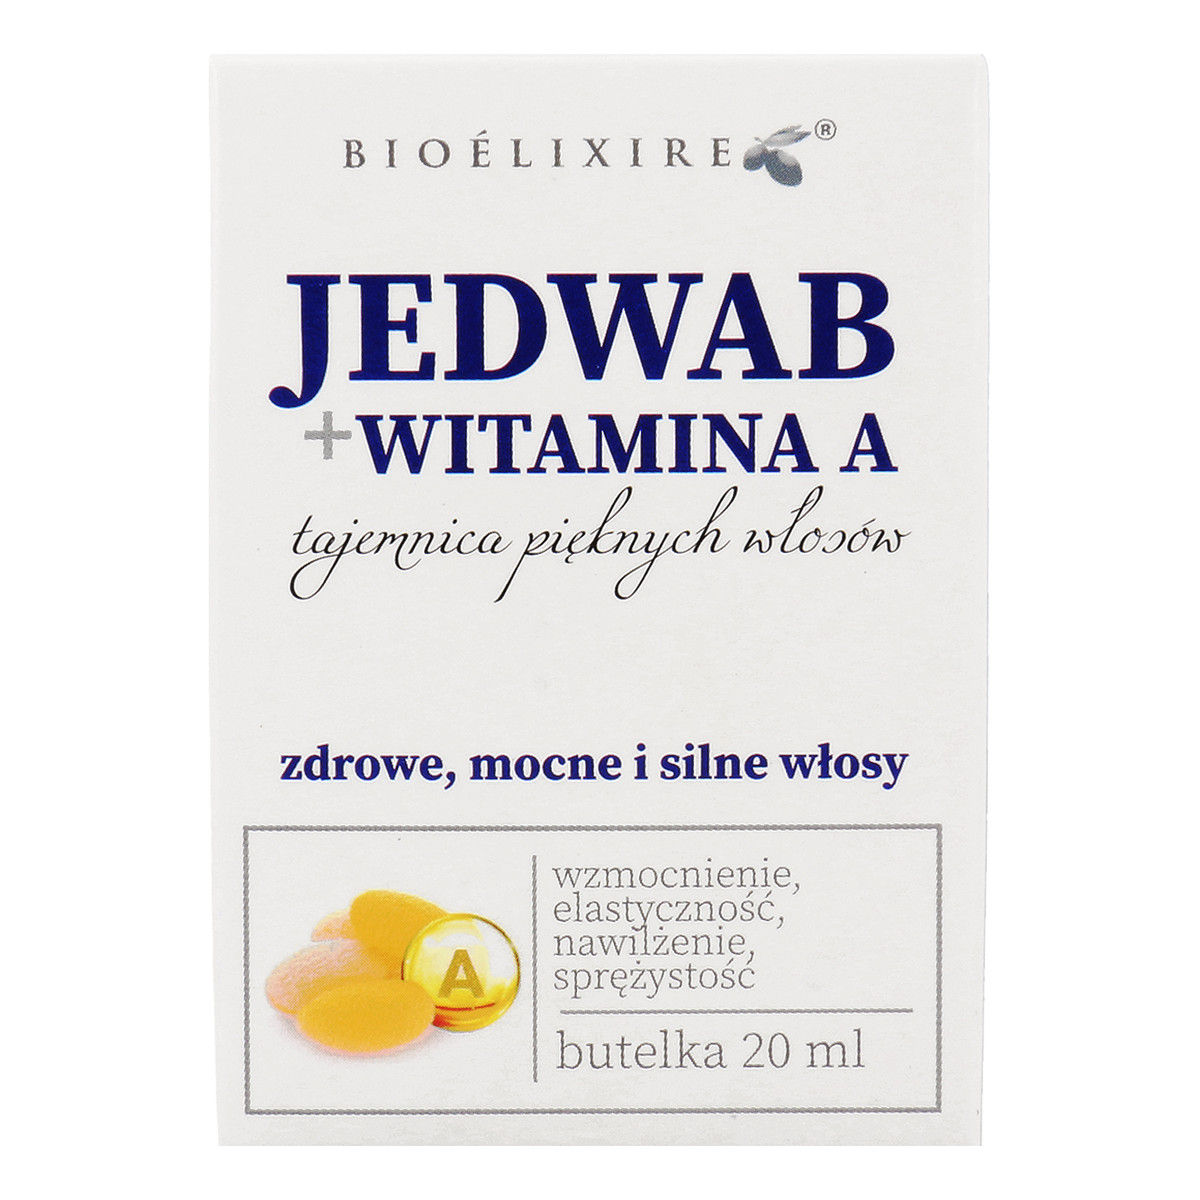 Bioelixire Silk Serum + Vitamina A Nawilżający Jedwab Do Włosów Z Witaminą A 20ml